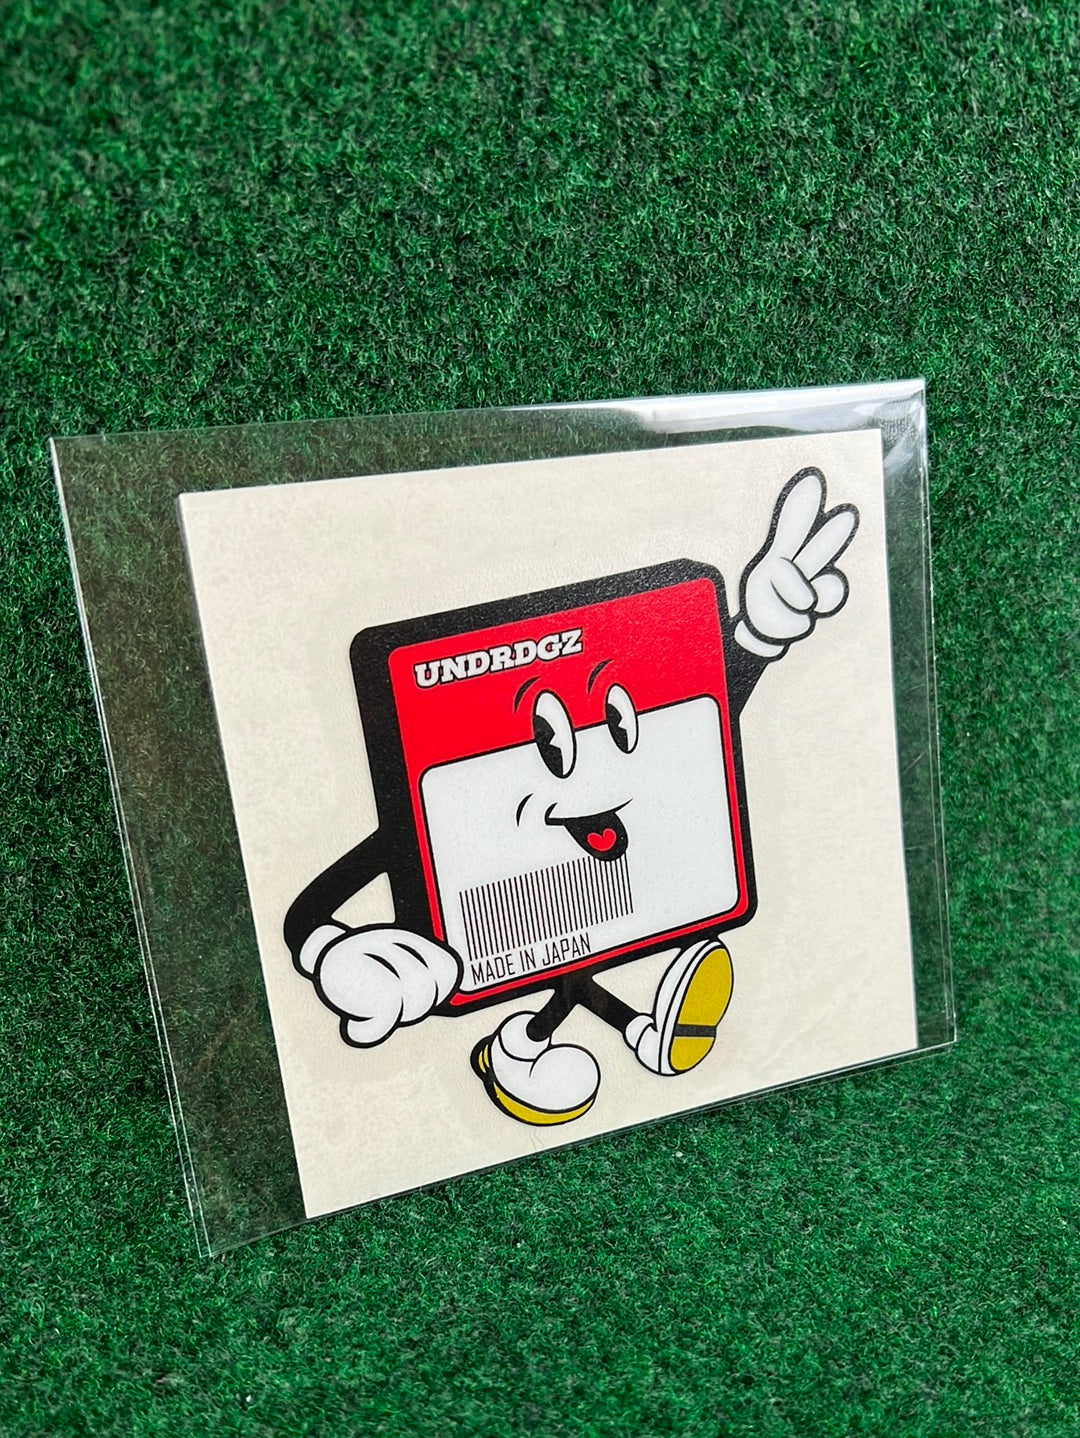 UNDERDOGZ - Mr. Genuine Parts Label Sticker